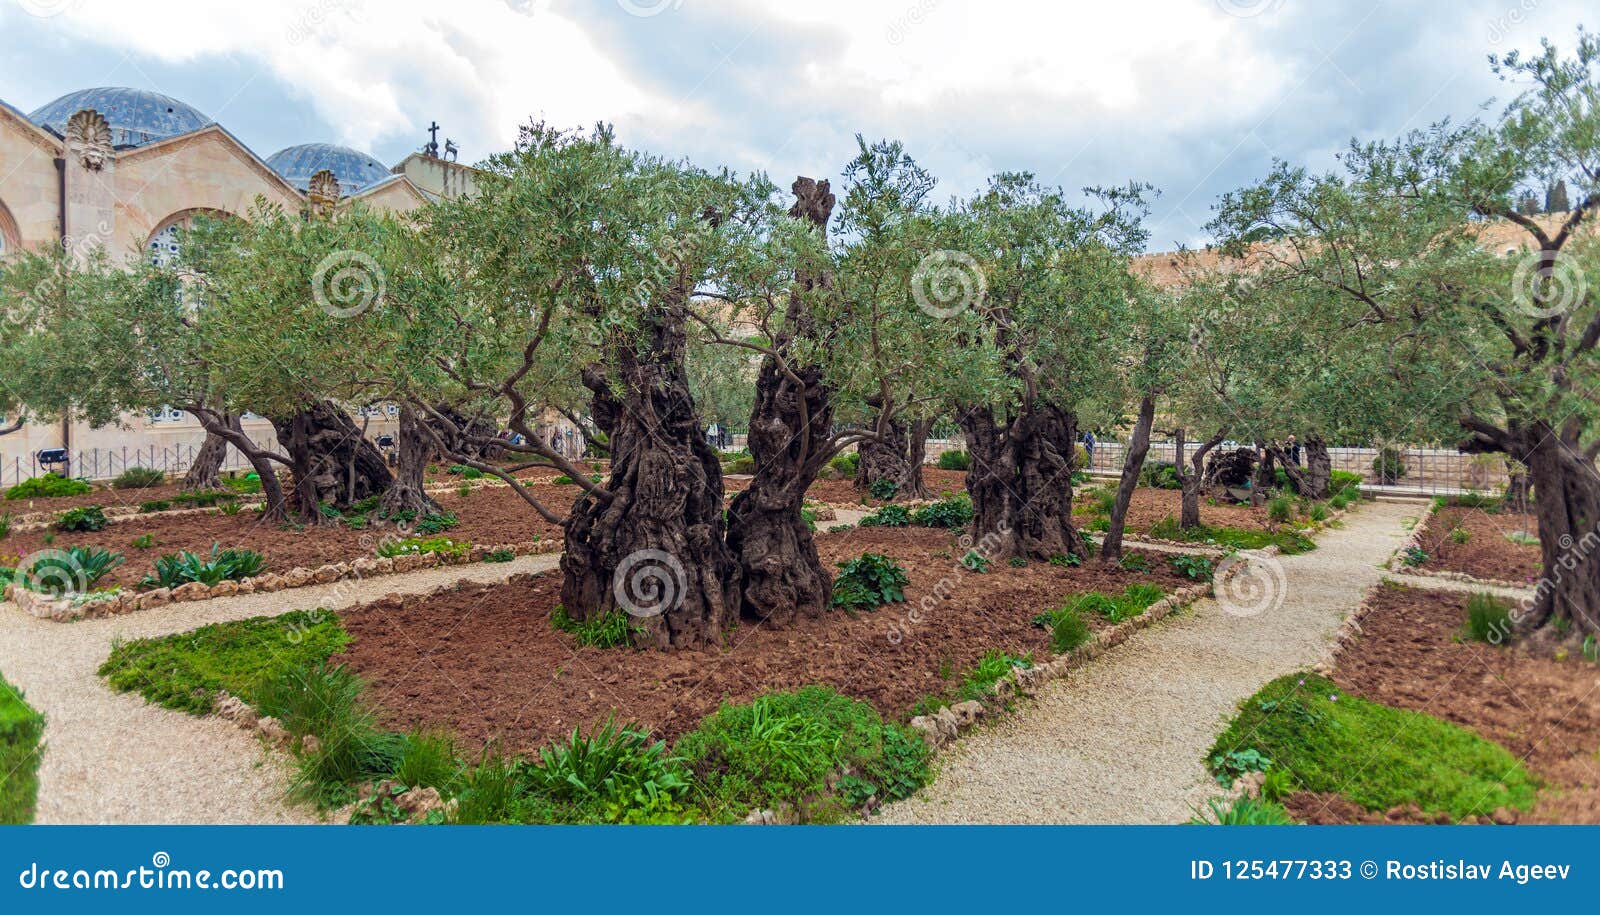 Gethsemane Garden At Mount Of Olives Jerusalem Israel Stock